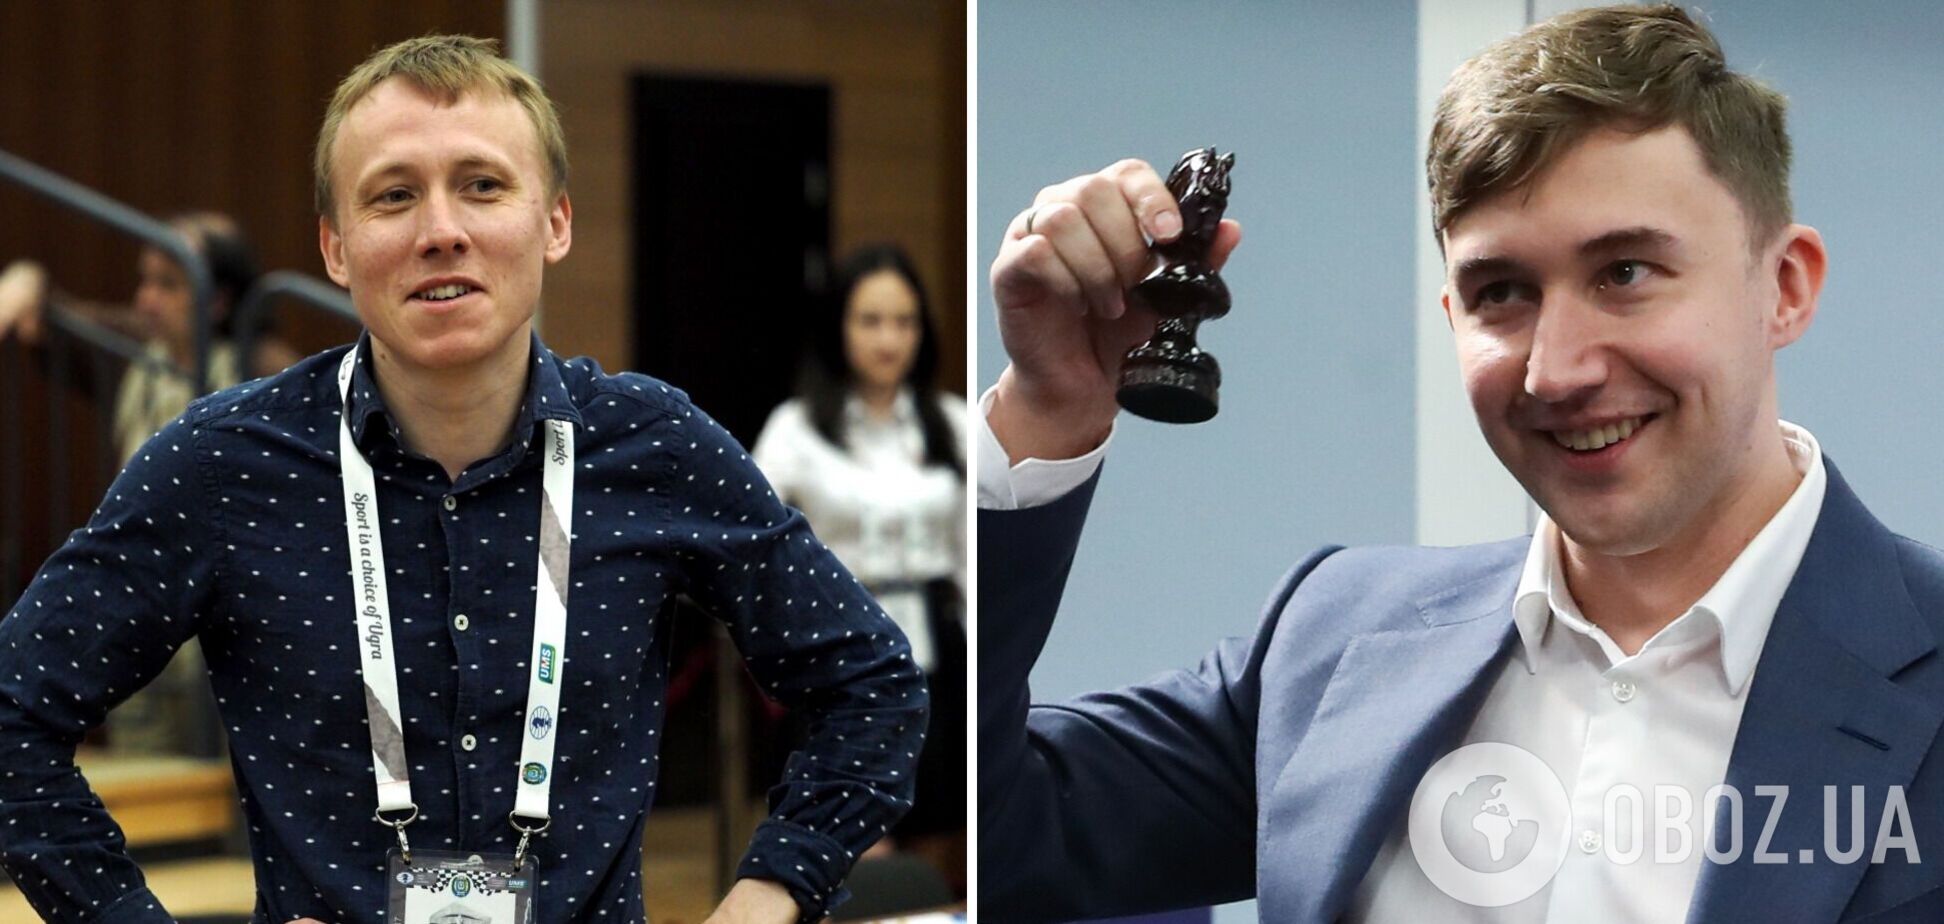 'В мозгу что-то меняется': чемпиону мира, предавшему Украины, поставили диагноз